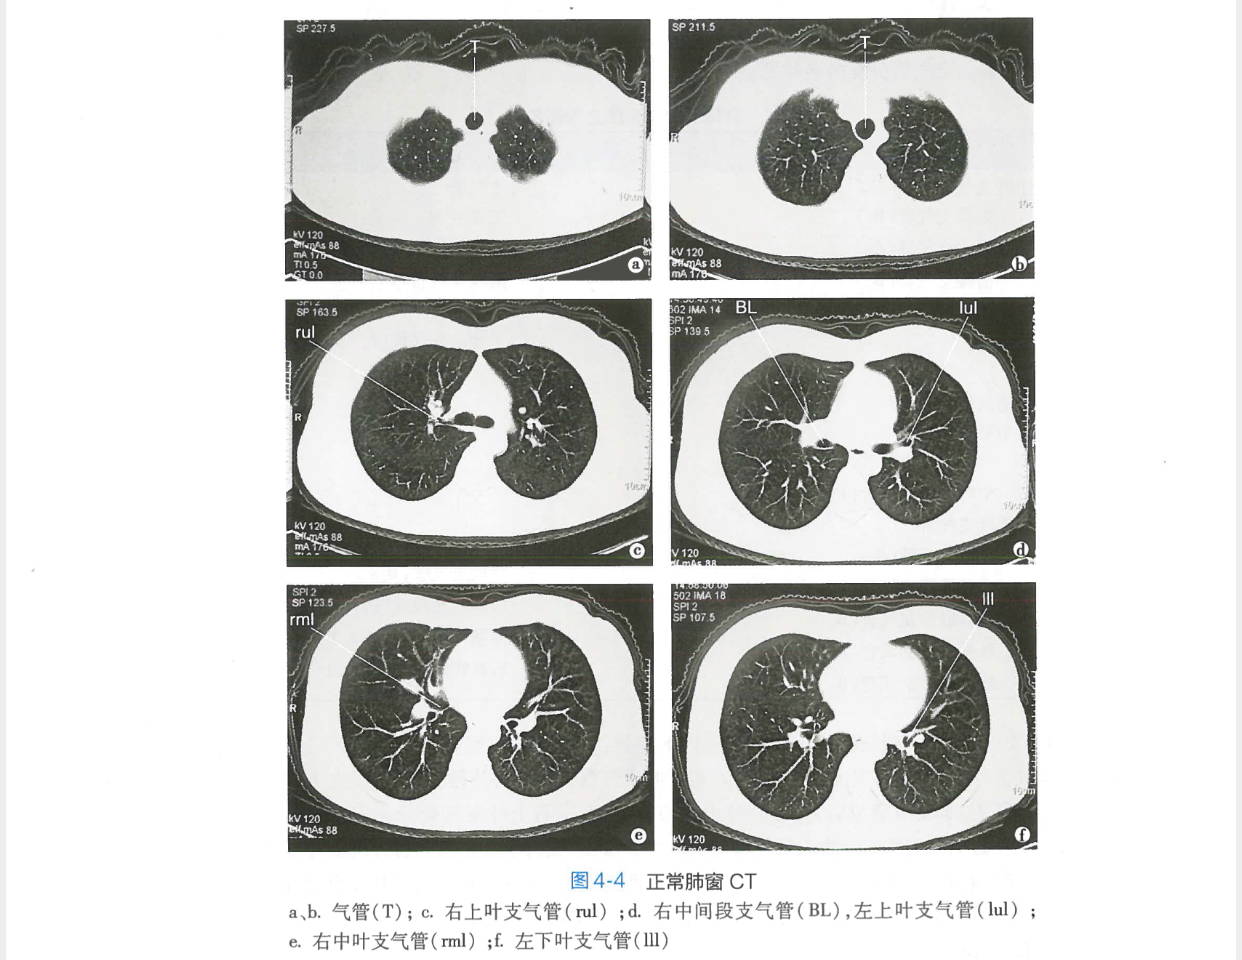 这是正常肺部ct,肺部质地较为均匀.